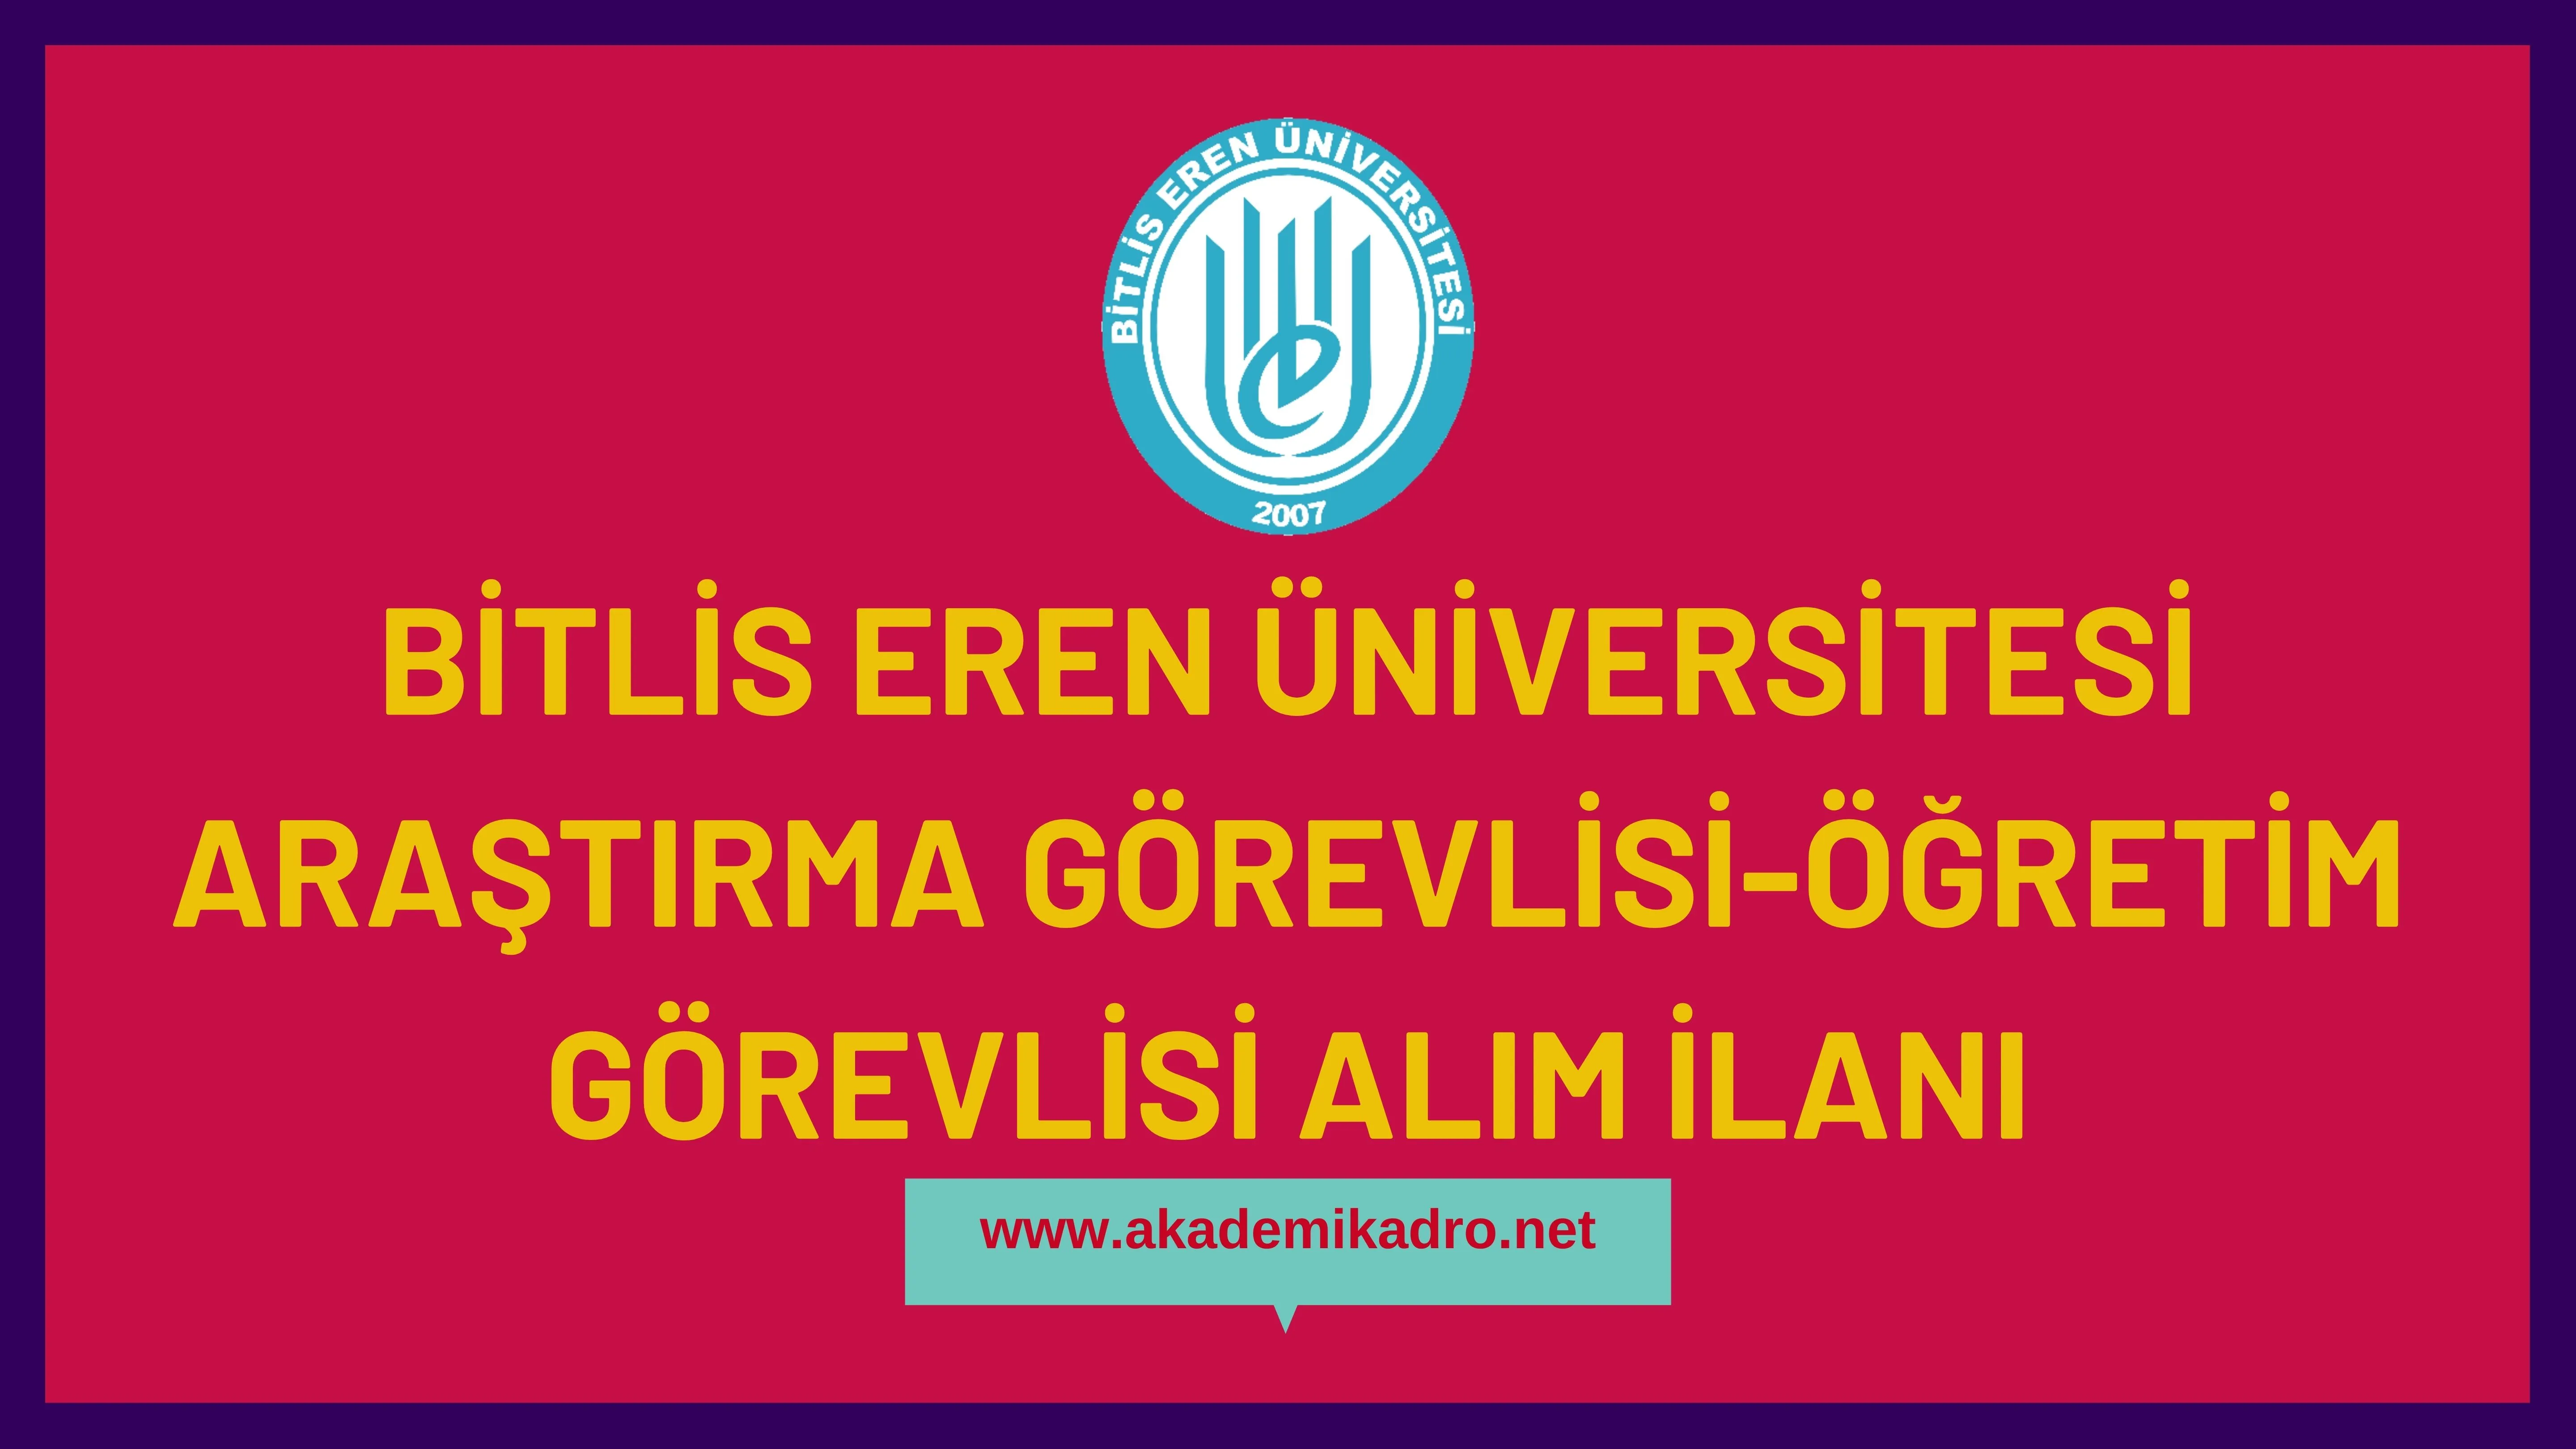 Bitlis Eren Üniversitesi Öğretim görevlisi ve Araştırma görevlisi olmak üzere 7 Öğretim elemanı alacak.